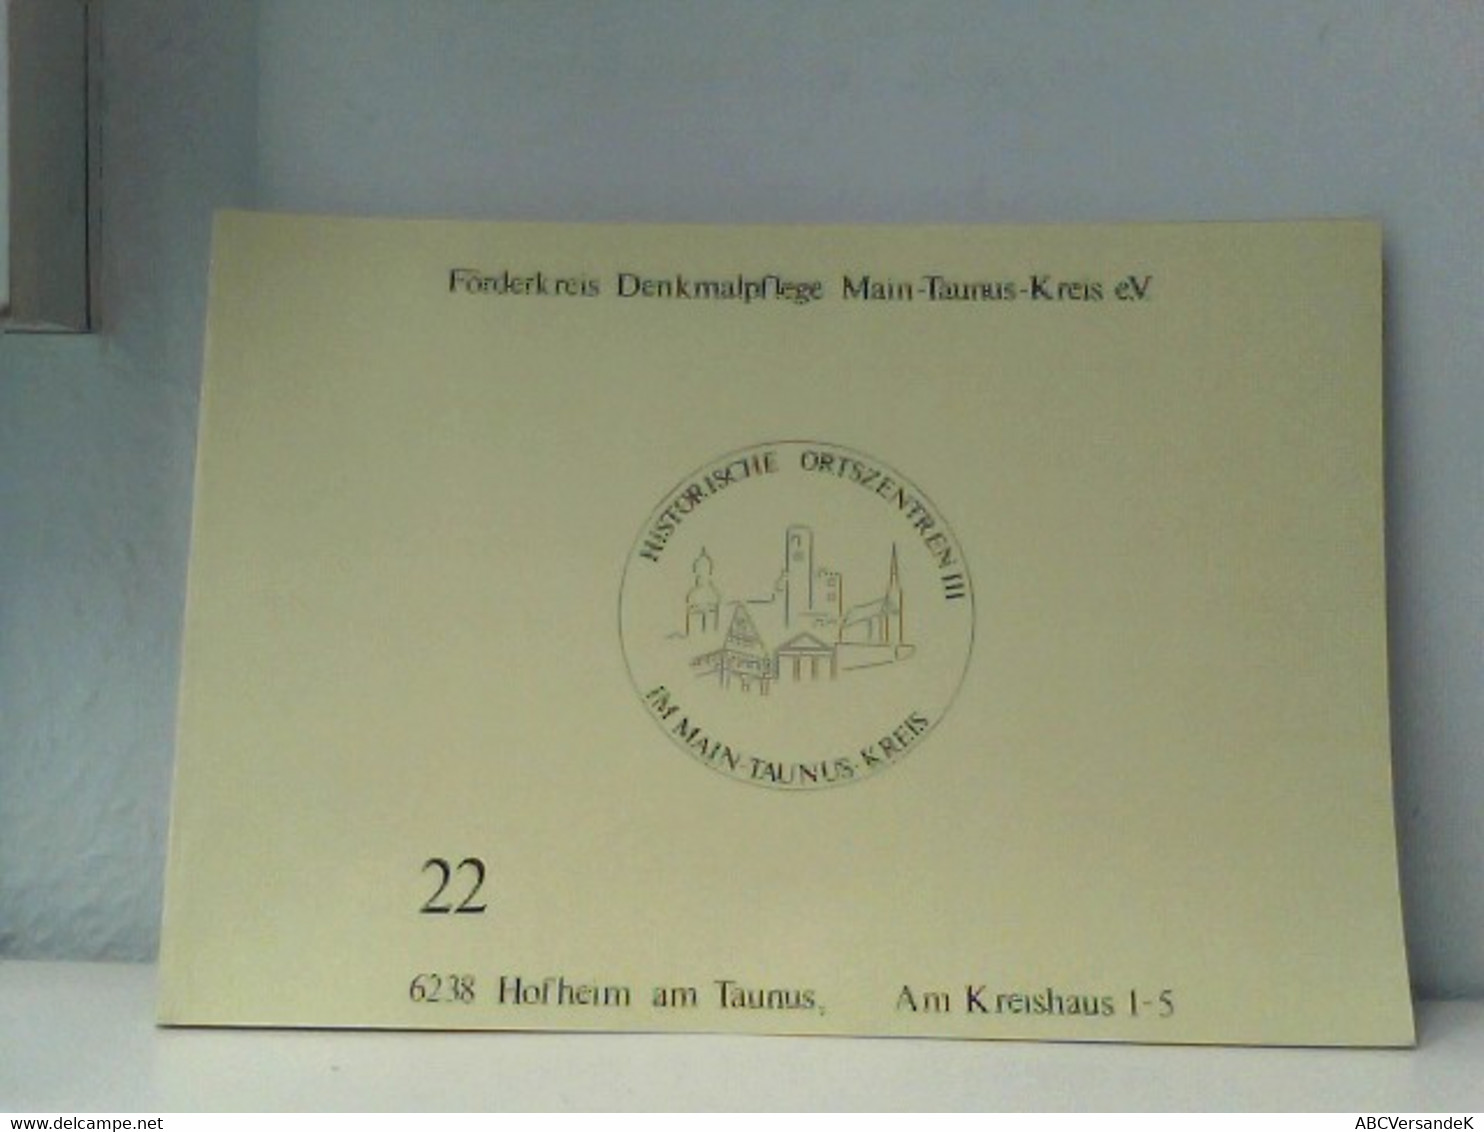 Förderkreis Denkmalpflege Main-Taunus-Kreis E.V., HGeft 22 - Hesse